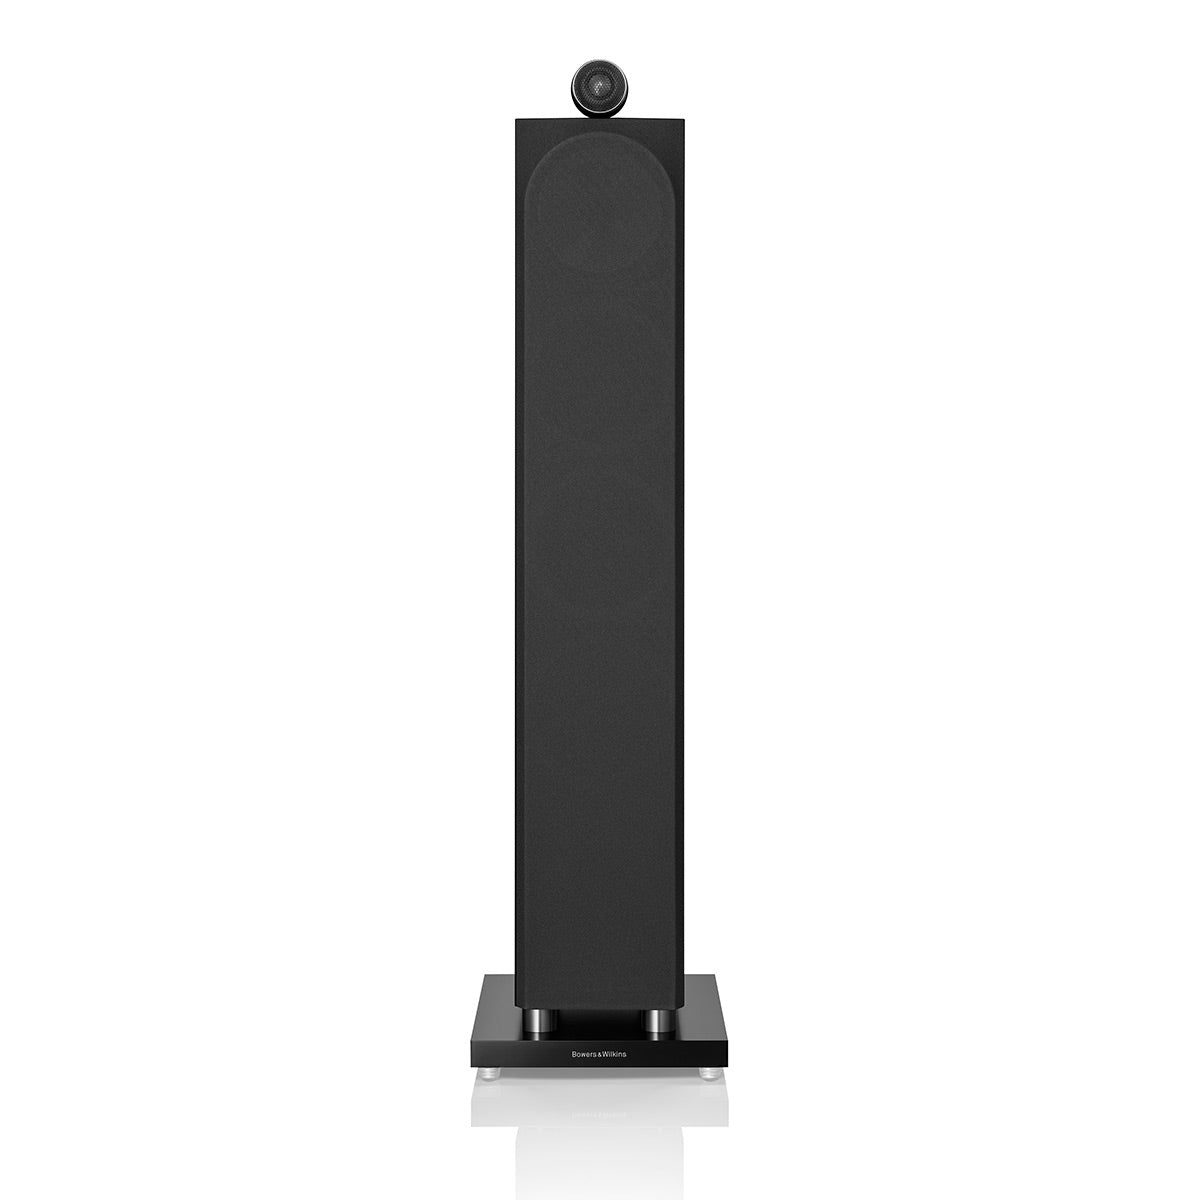 Bowers & Wilkins 702 S3 3-Way Floorstanding Speaker - Each (Gloss Black)